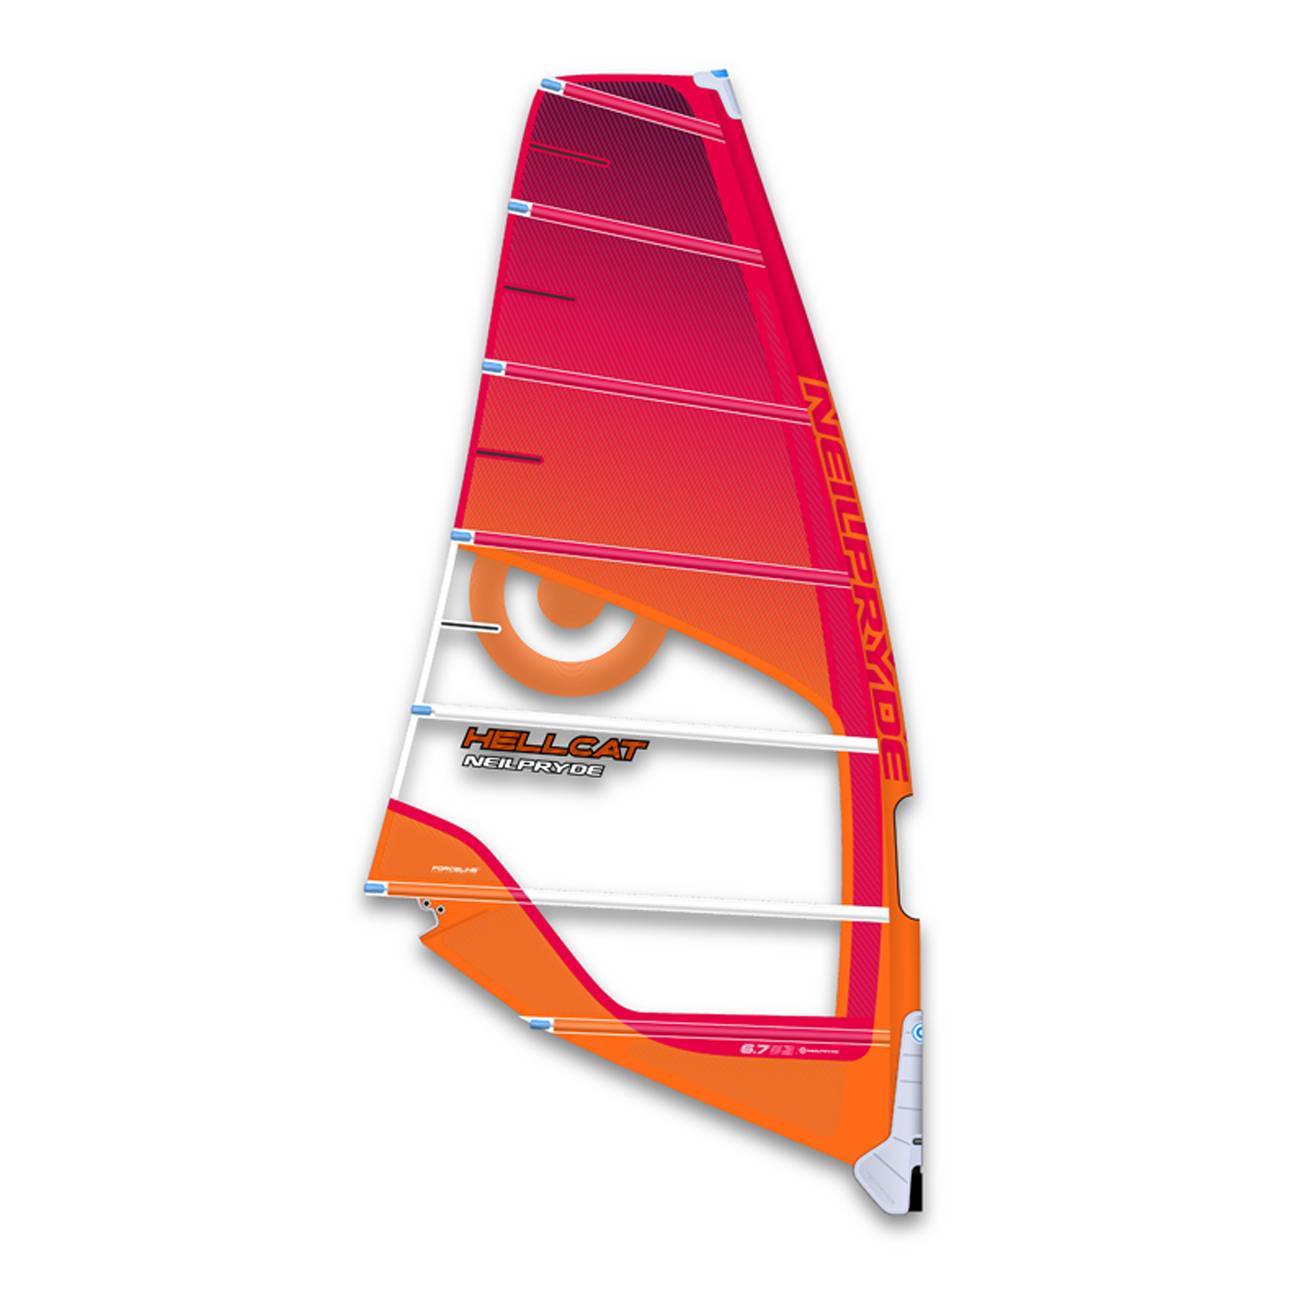 NeilPryde Hellcat 2017 now from 819.66€ online at windsurf.de